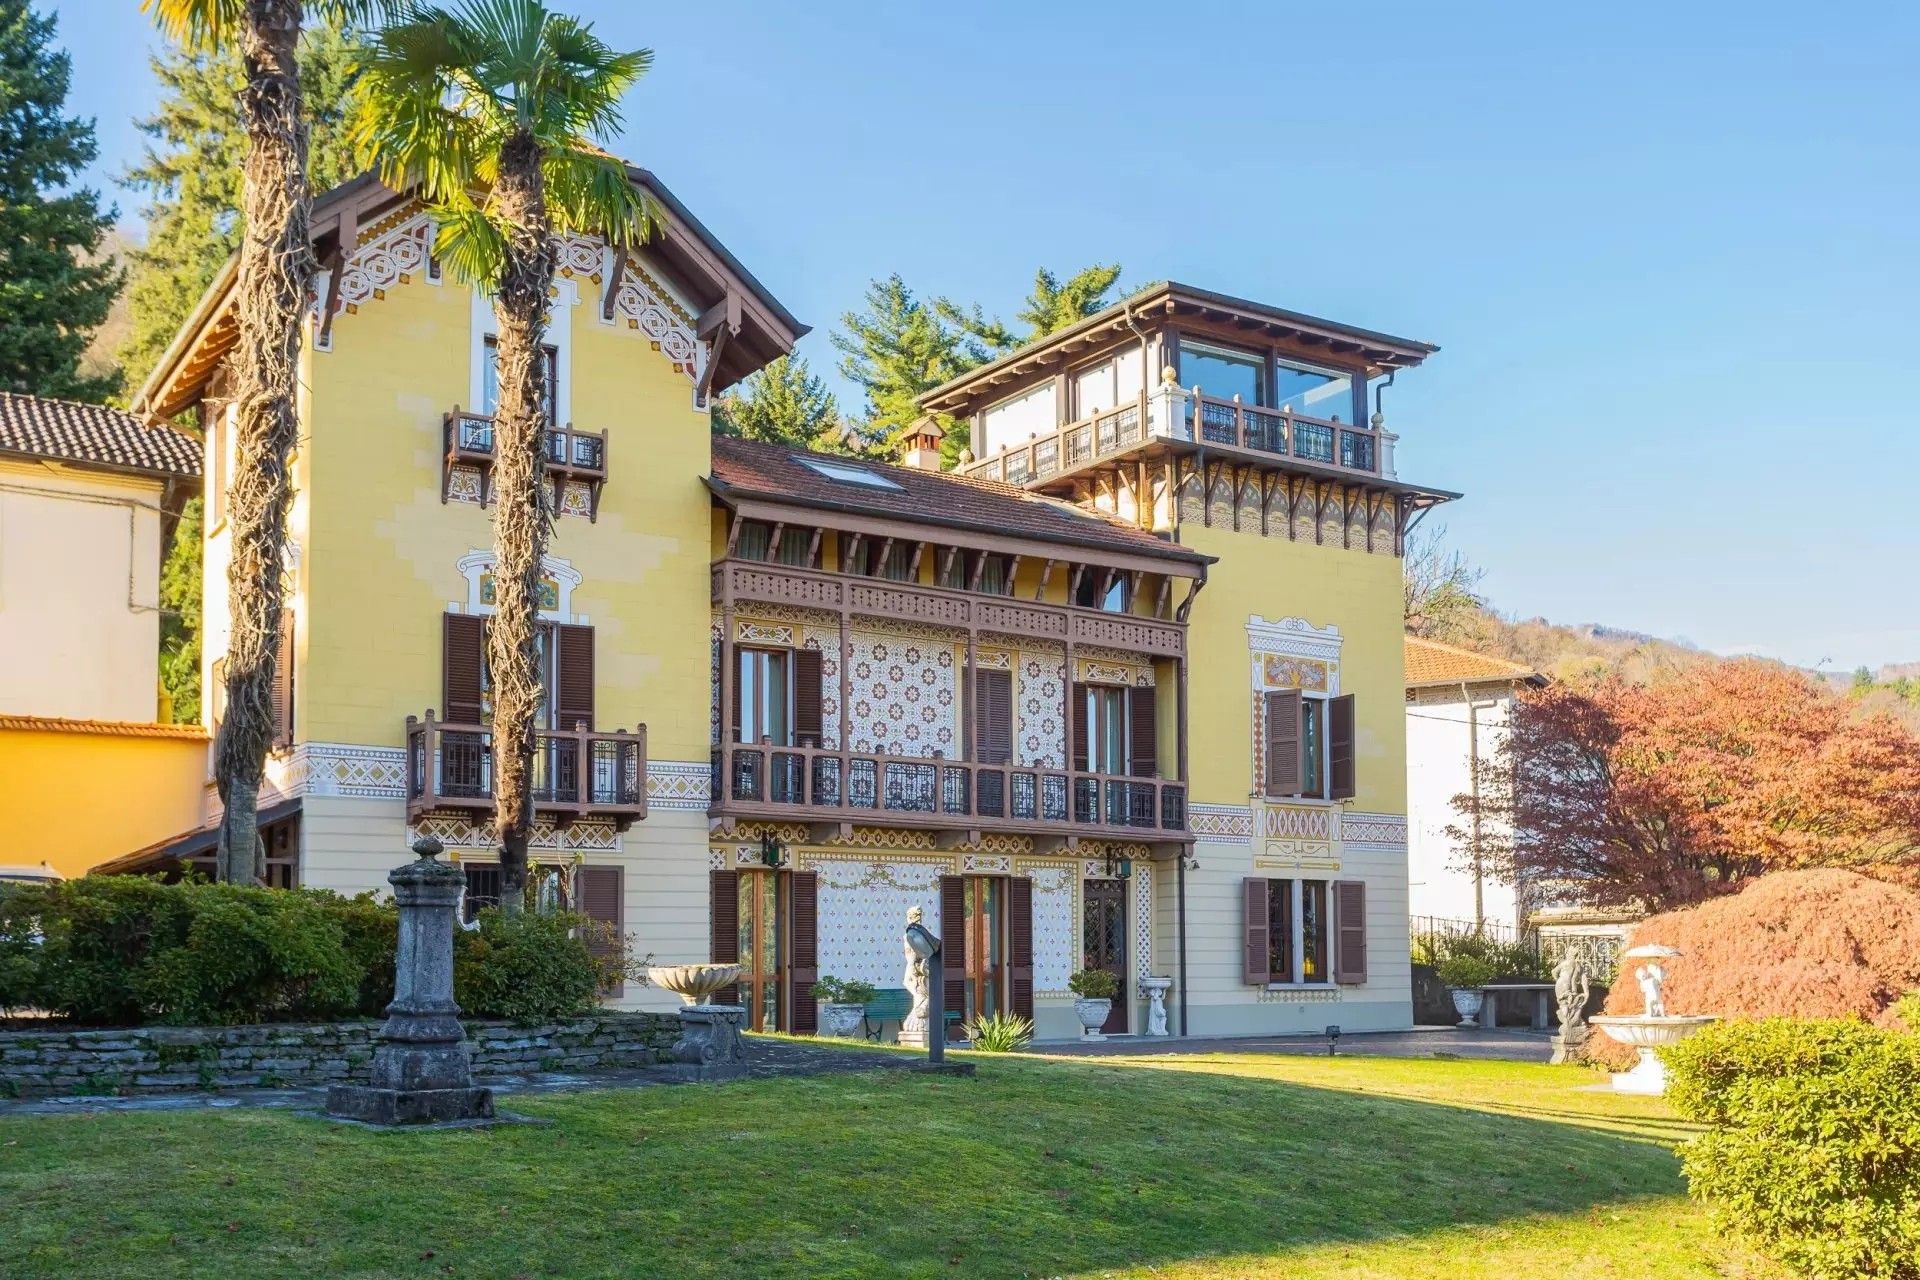 Fotos Villa de estilo Art Nouveau con vistas al lago en Stresa Carciano